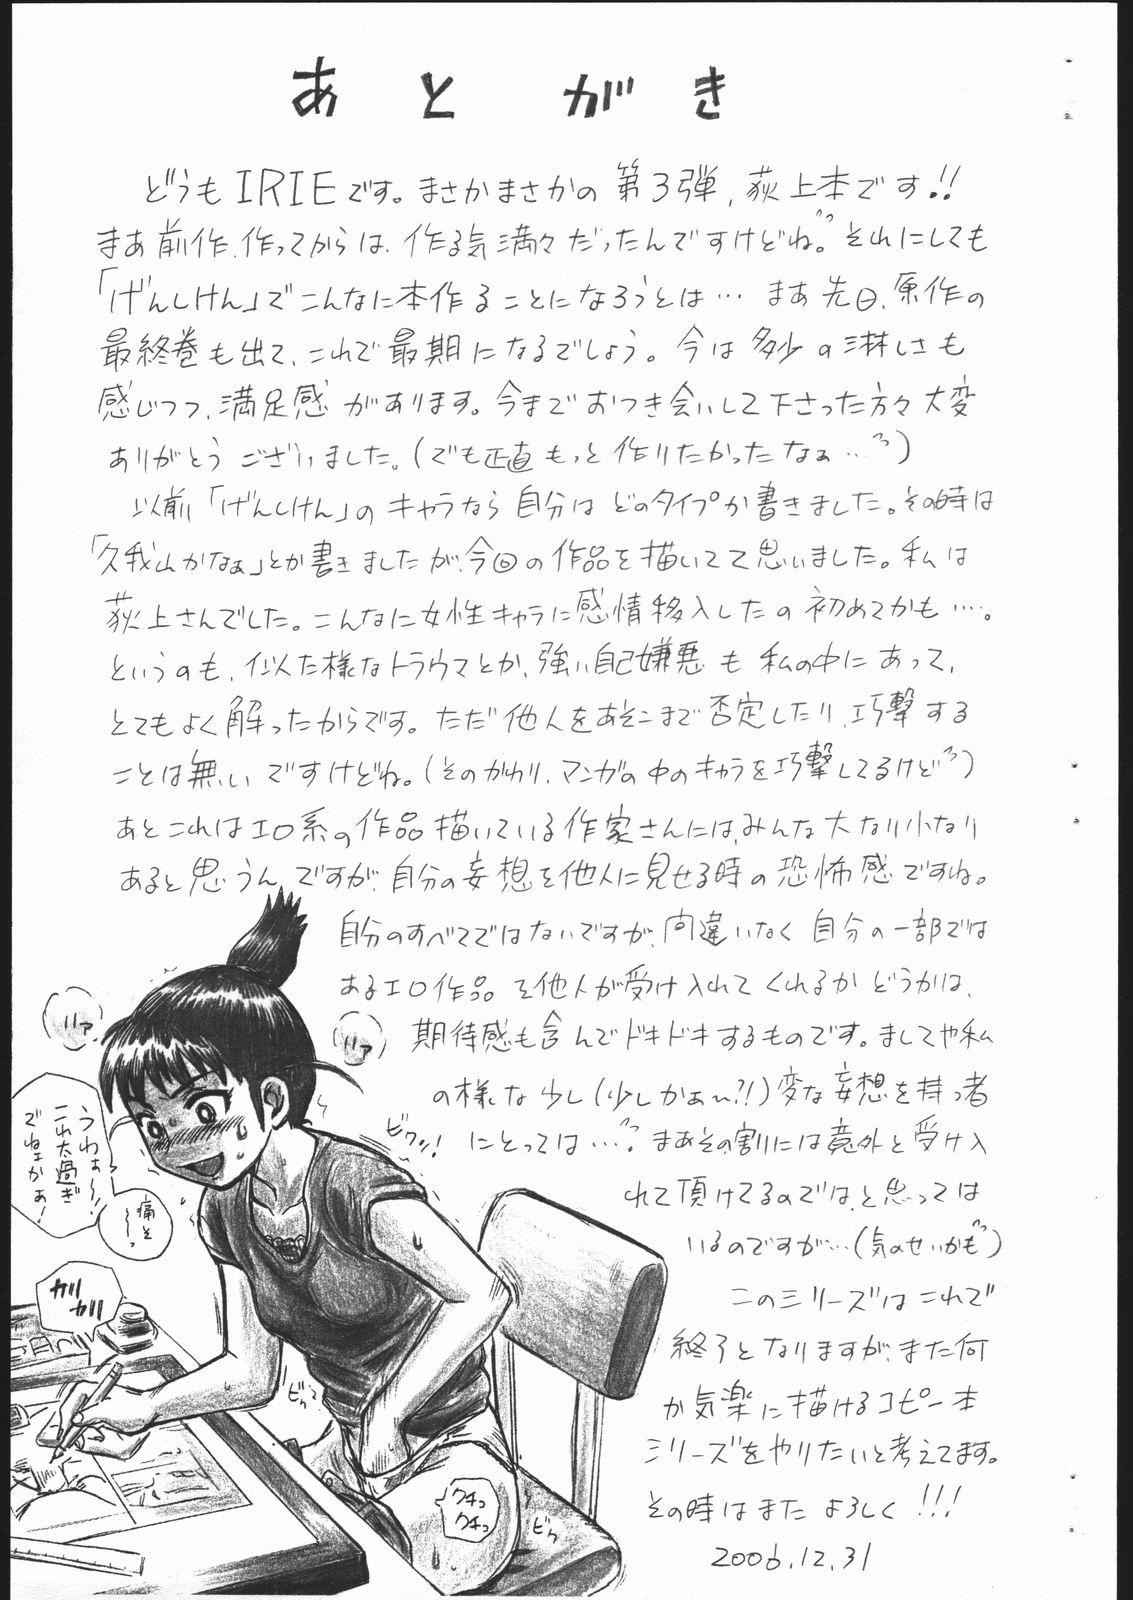 Flashing GENSHIKEN FILE Ogiue Chika Gazou Shuu - Genshiken 18 Year Old - Page 9